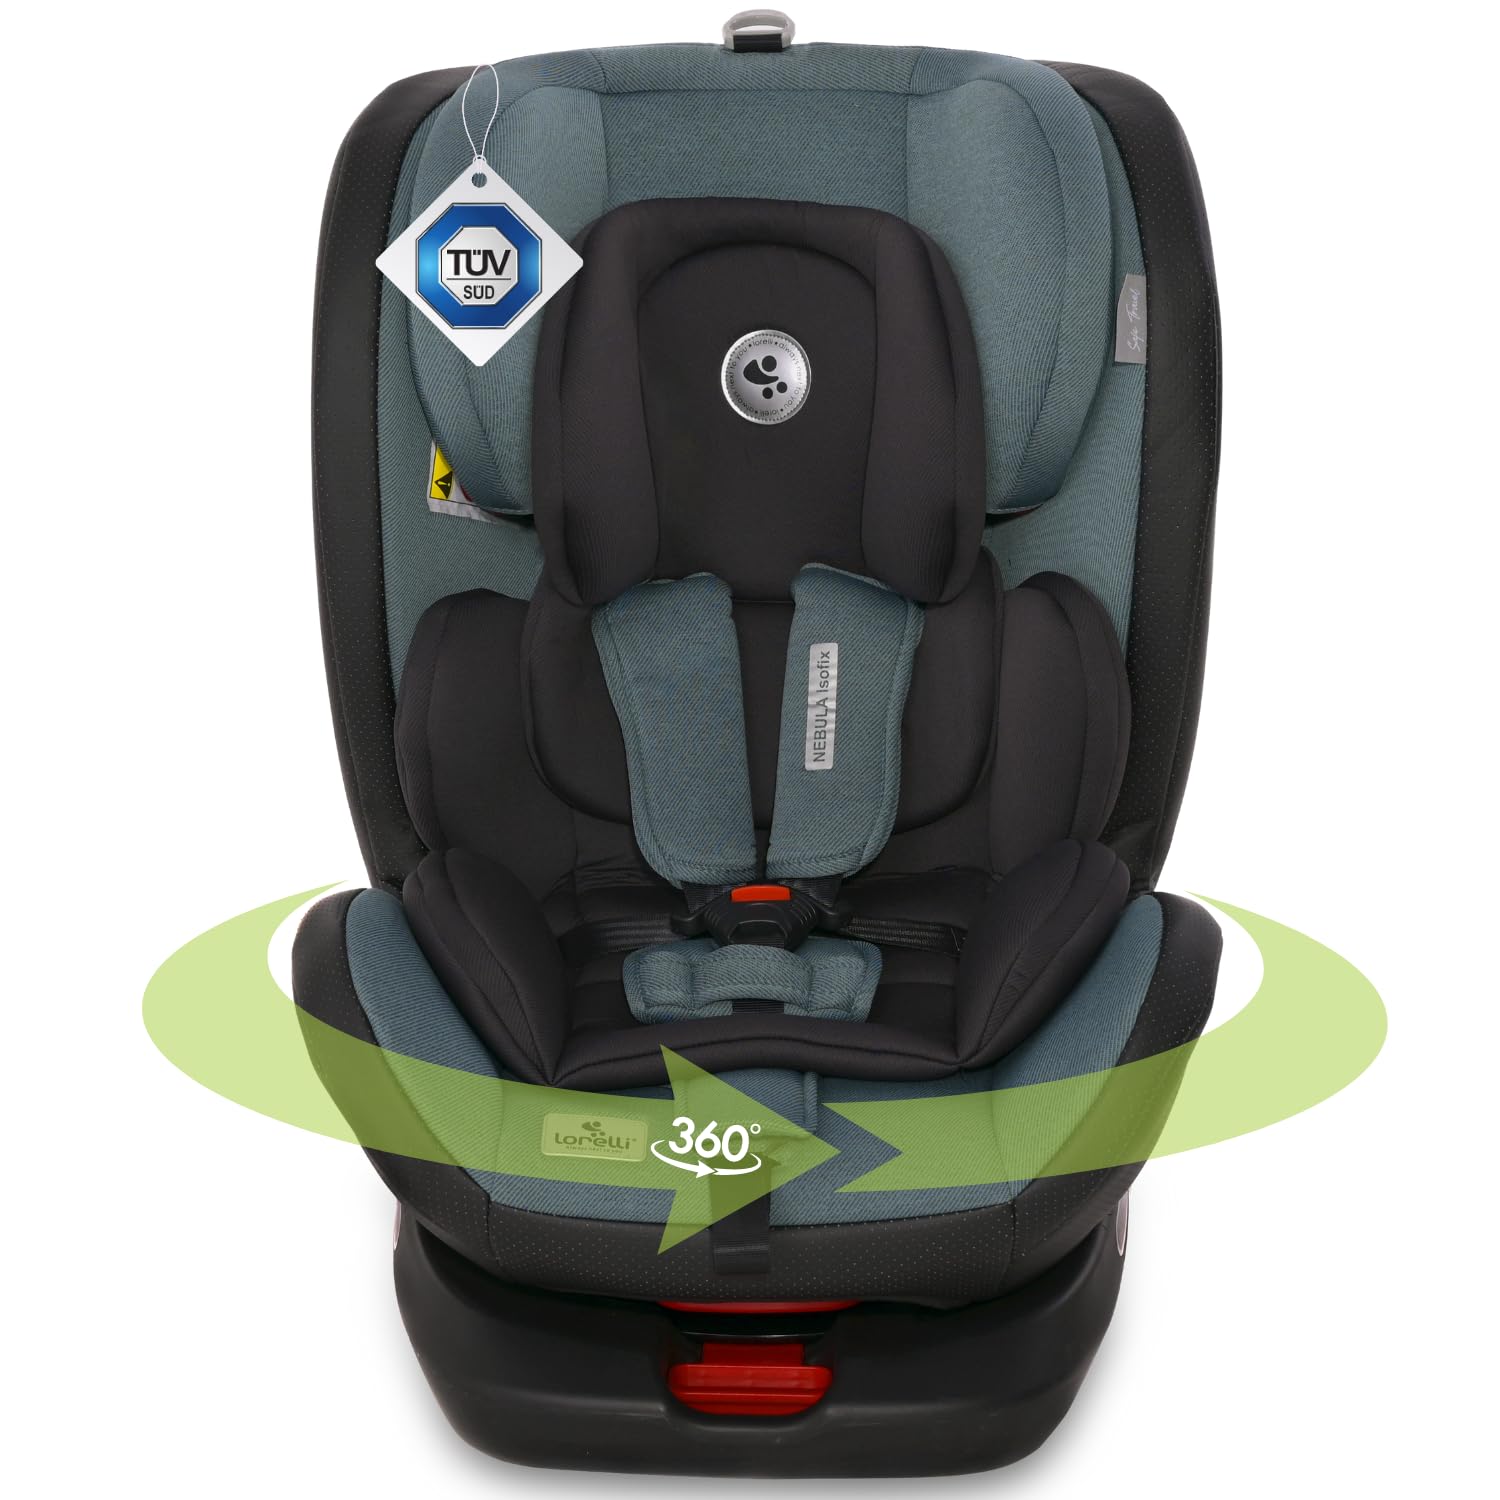 Lorelli Auto Kindersitz Nebula, mitwachsender Autositz mit Isofix - Gruppe 0+/1/2/3 (0-36 kg), Babysitz, einstellbare Kopfstütze in 8 Positionen, 360 Grad drehbar, 5-Punkt-Sicherheitsgurt, blau